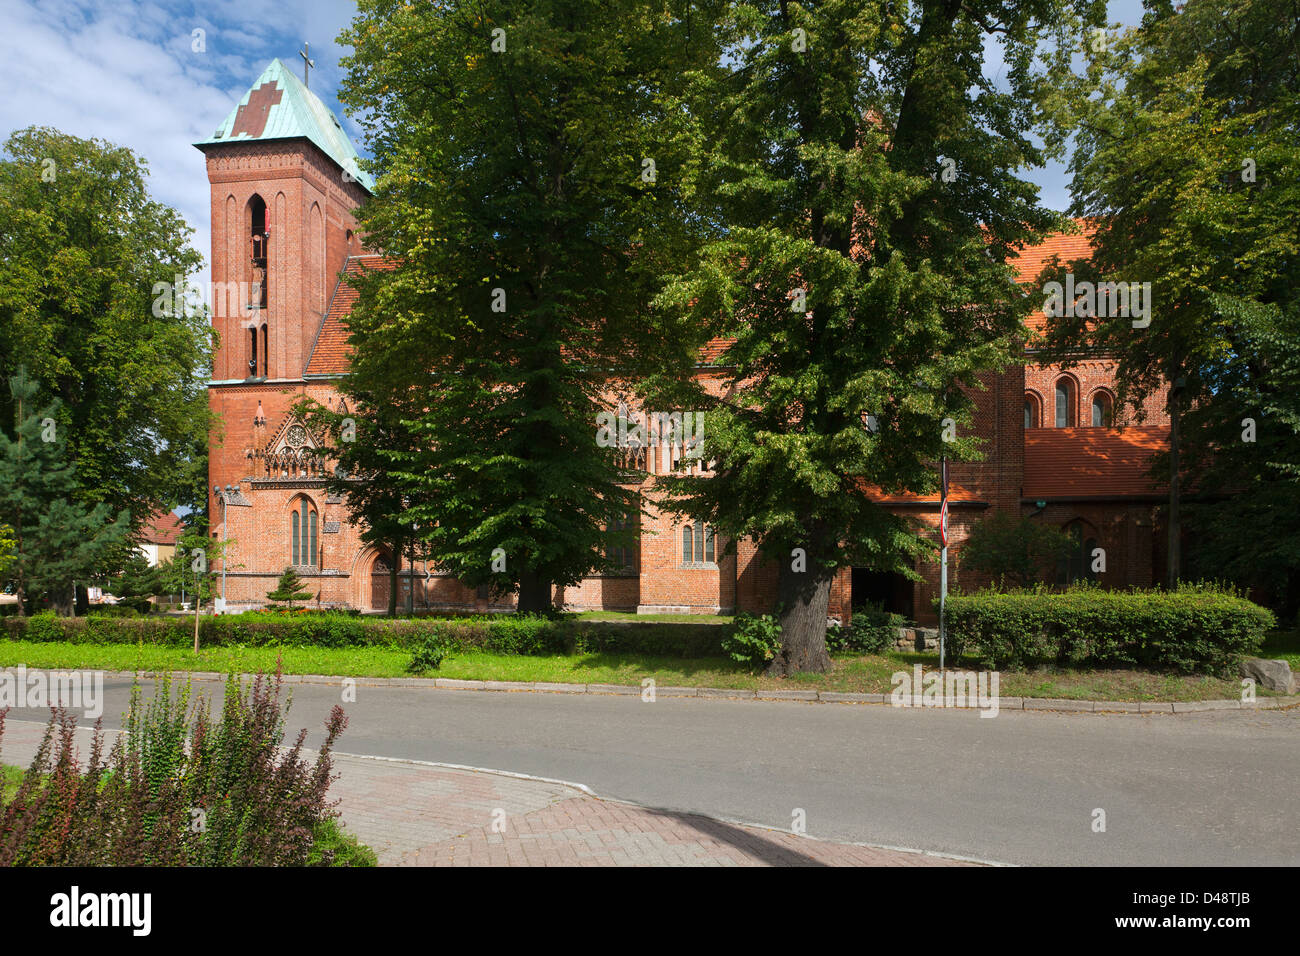 The Romanesque Gothic Cathedral in Kamien Pomorski, Pomerania, Poland Stock Photo